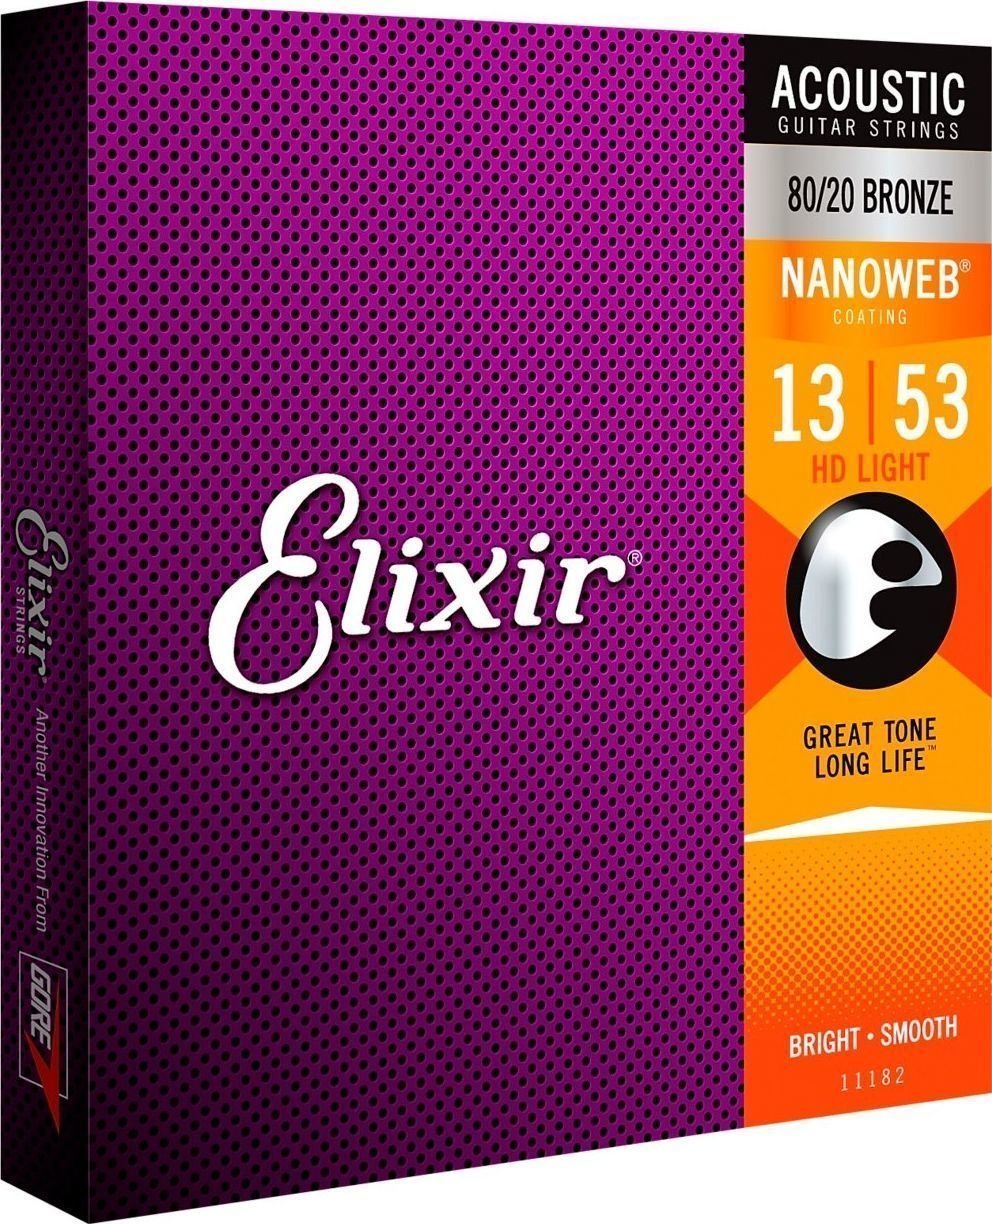 Snaren voor akoestische gitaar Elixir 11182 Nanoweb 13-53